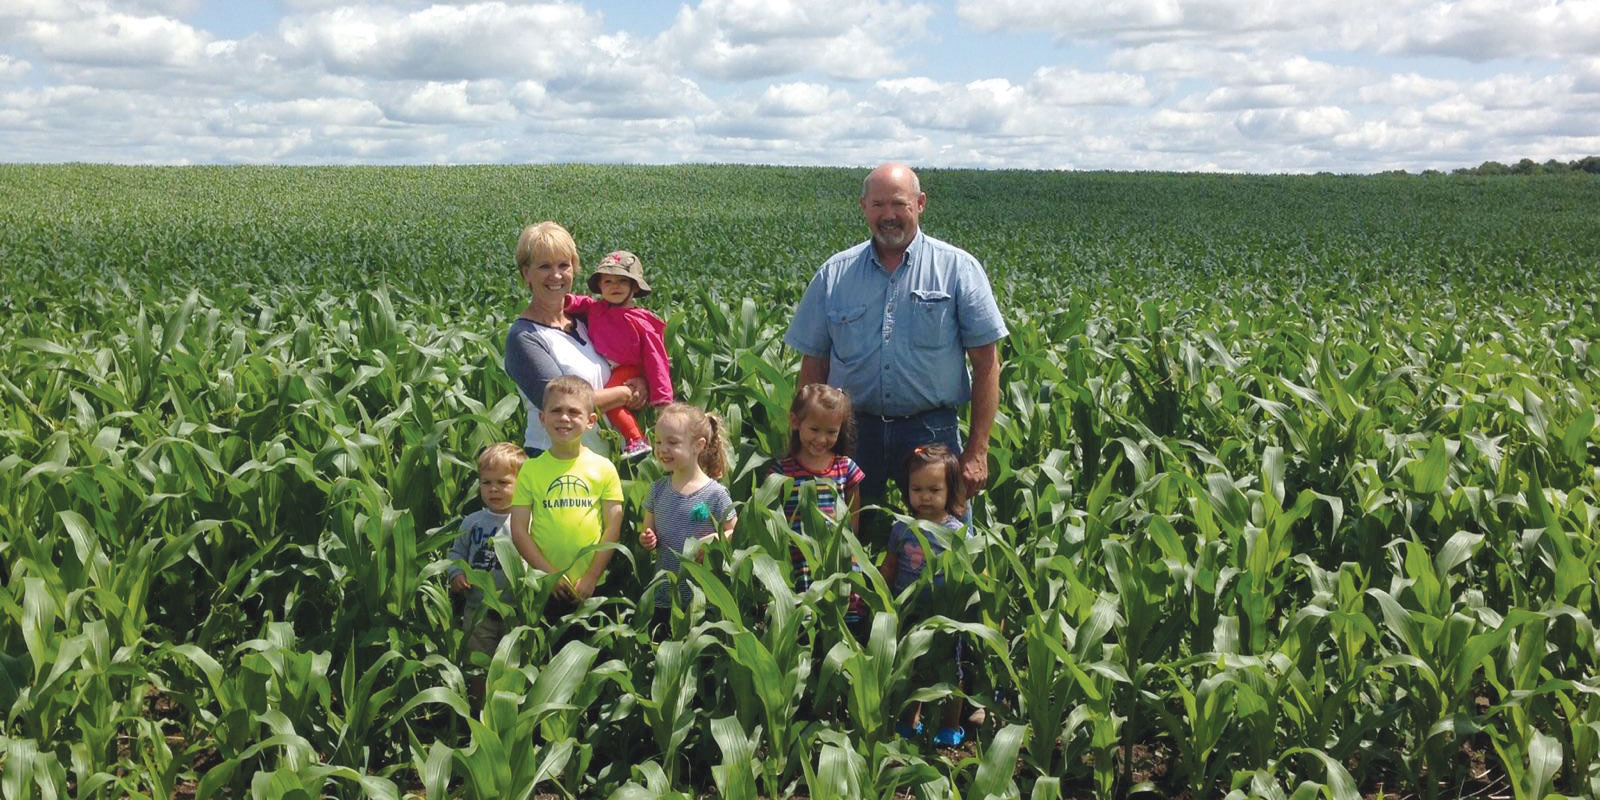 Murray Family in corn field